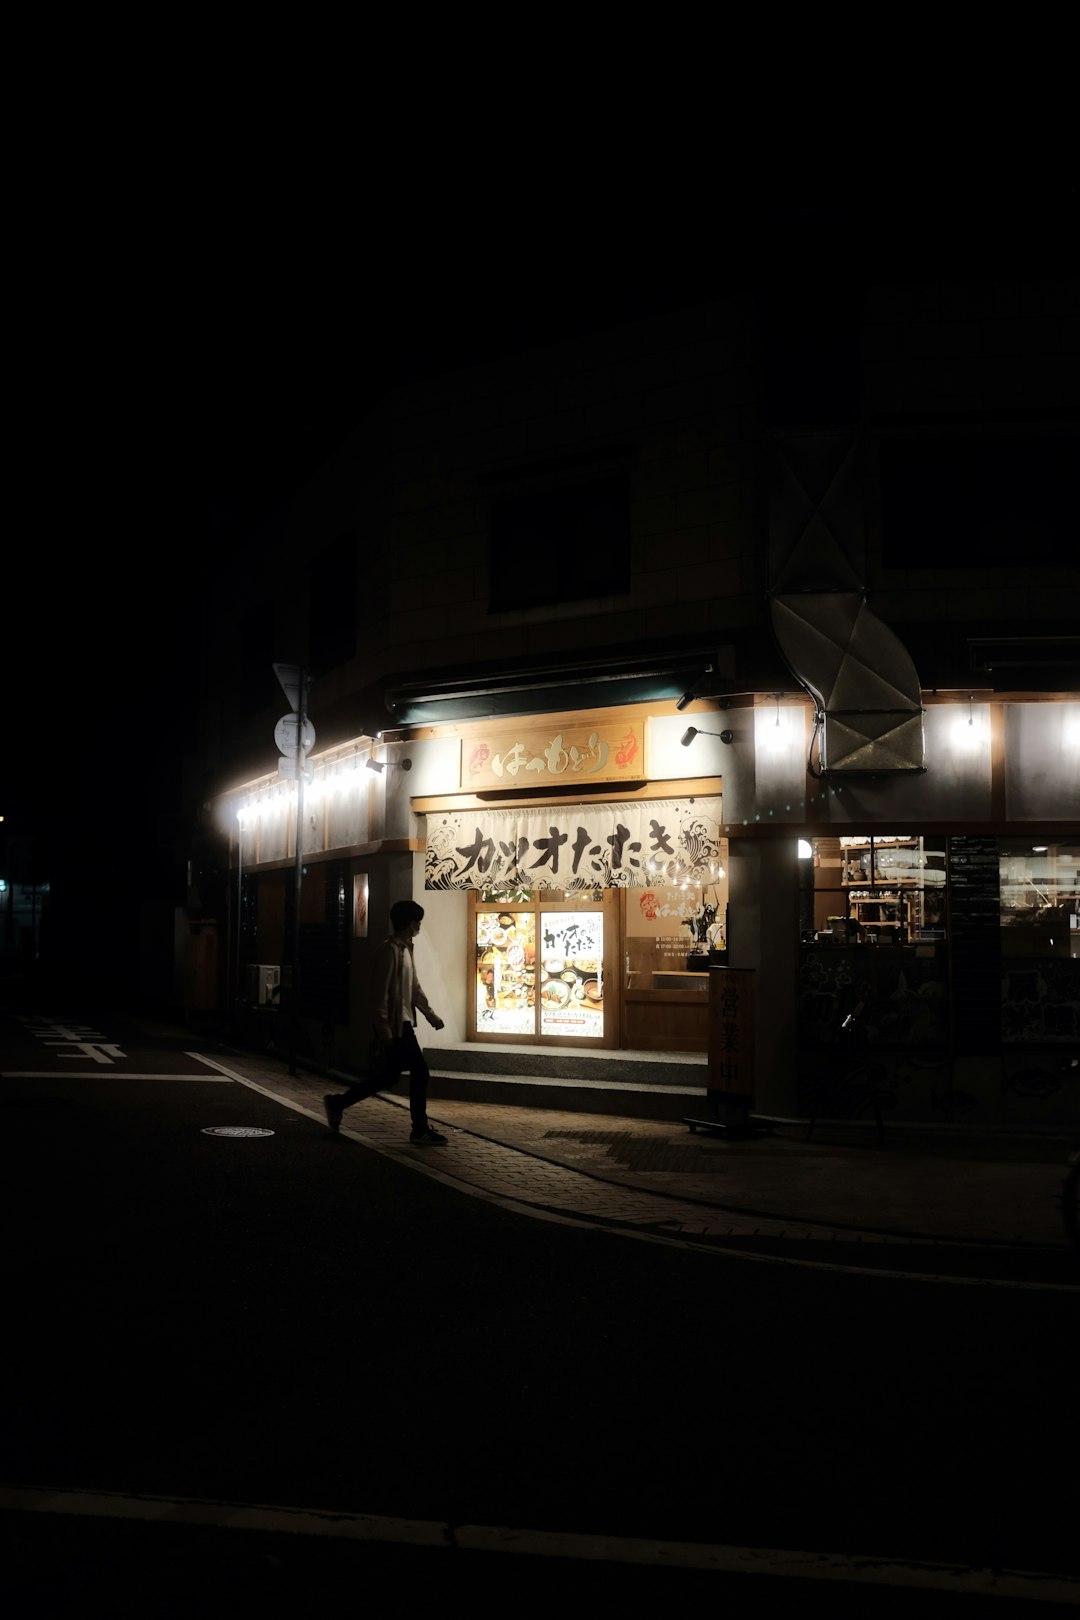 people walking on sidewalk during night time